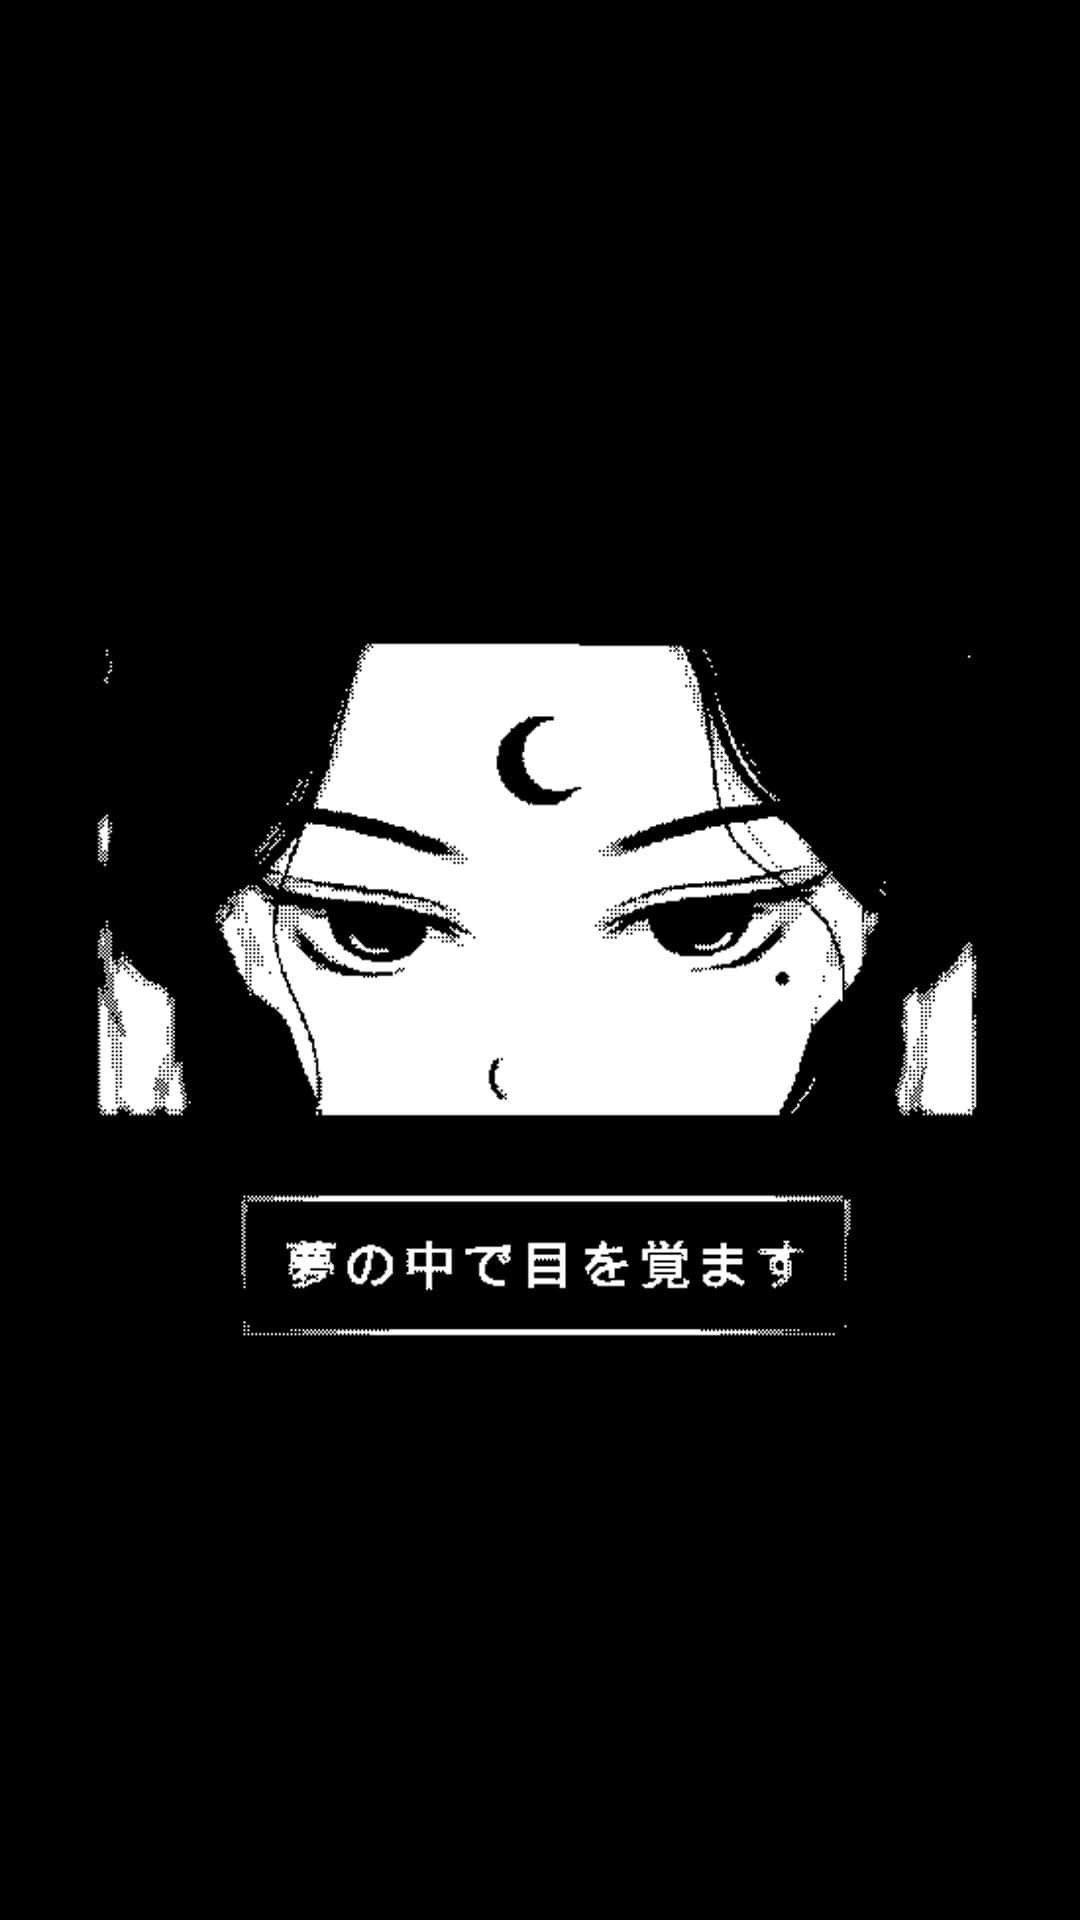 15+] Dark Samurai Anime Wallpapers - WallpaperSafari